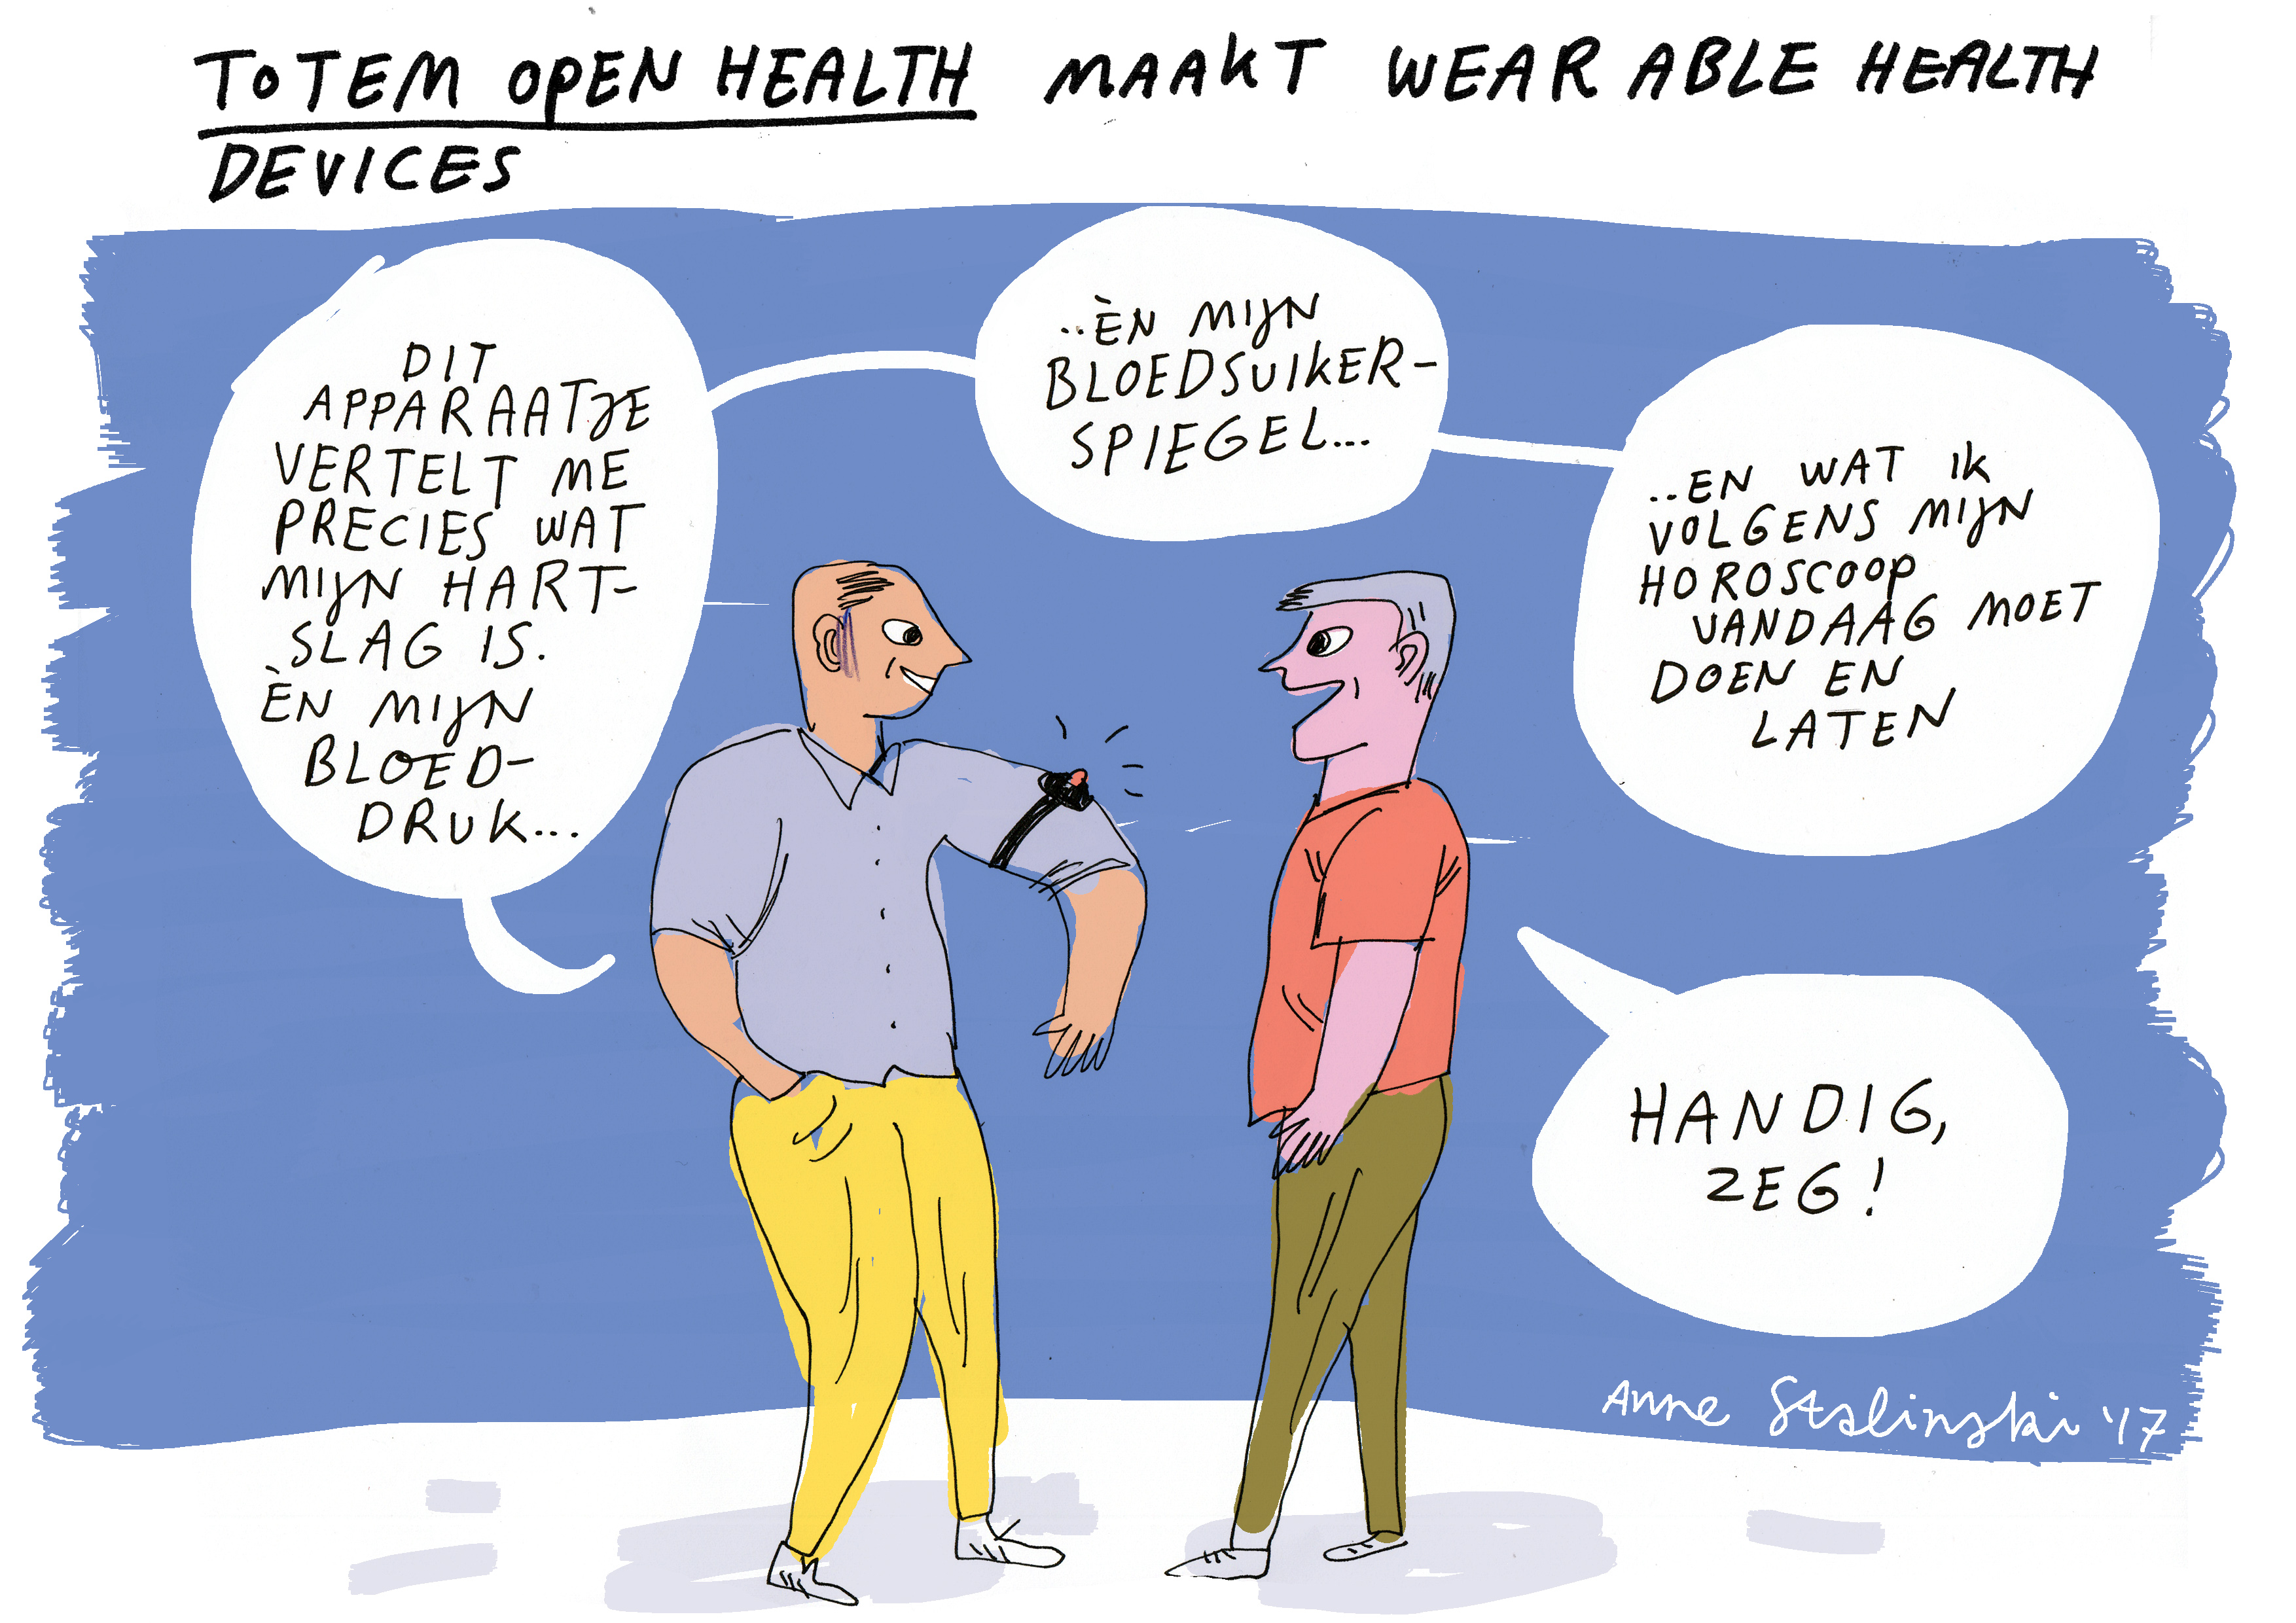 Cartoon Totem OpenHealth: Totem Open Health maakt wearable health devices. 'Dit apparaatje vertelt me precies wat mijn hartslag is EN mijn bloeddruk. EN mijn bloedsuikerspiegel. En wat ik volgens mijn horoscoop vandaag moet doen en laten.' 'Handig zeg'.